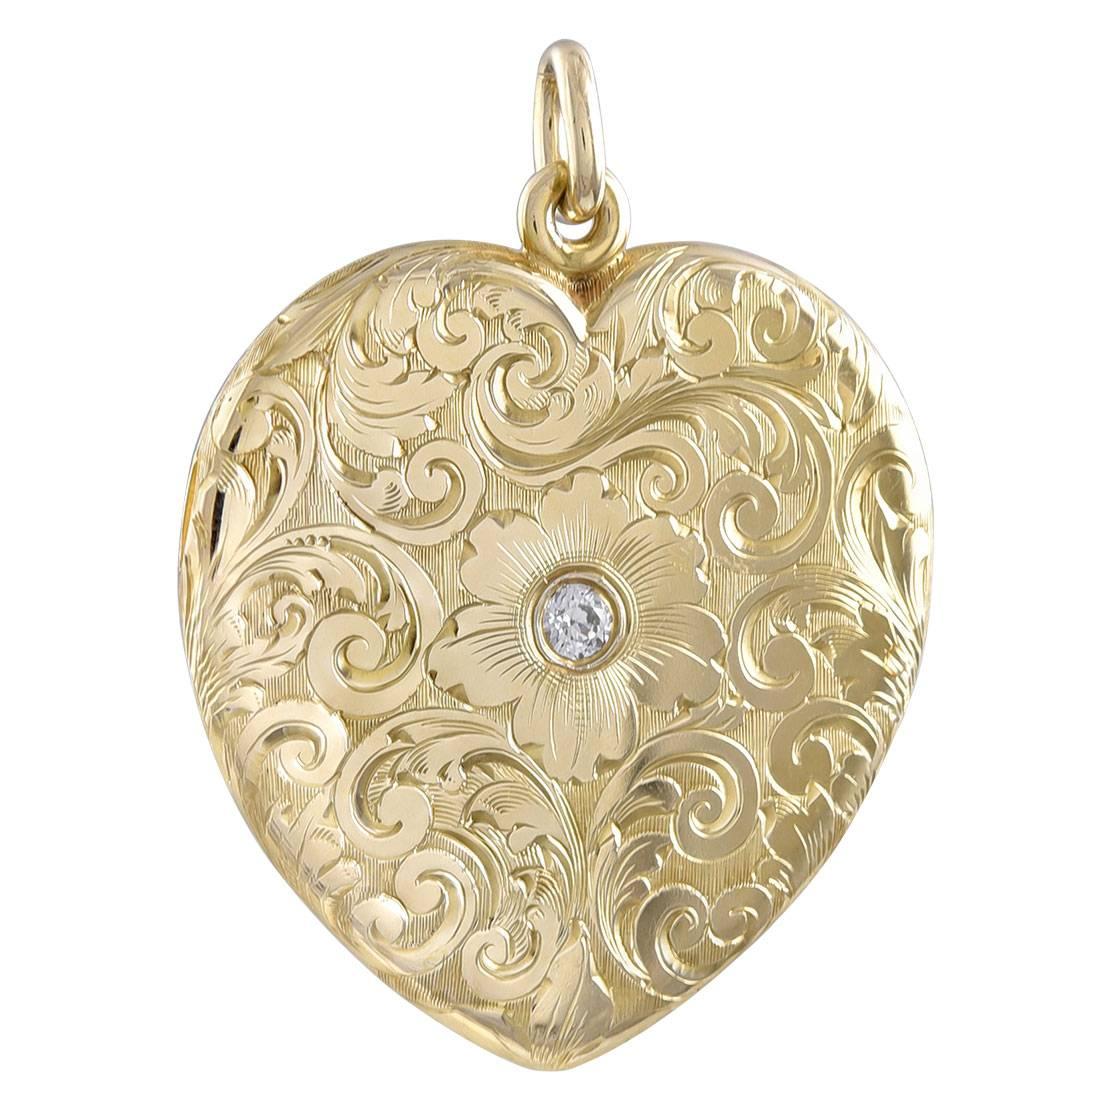 Wunderschönes antikes Gold-Herz-Medaillon